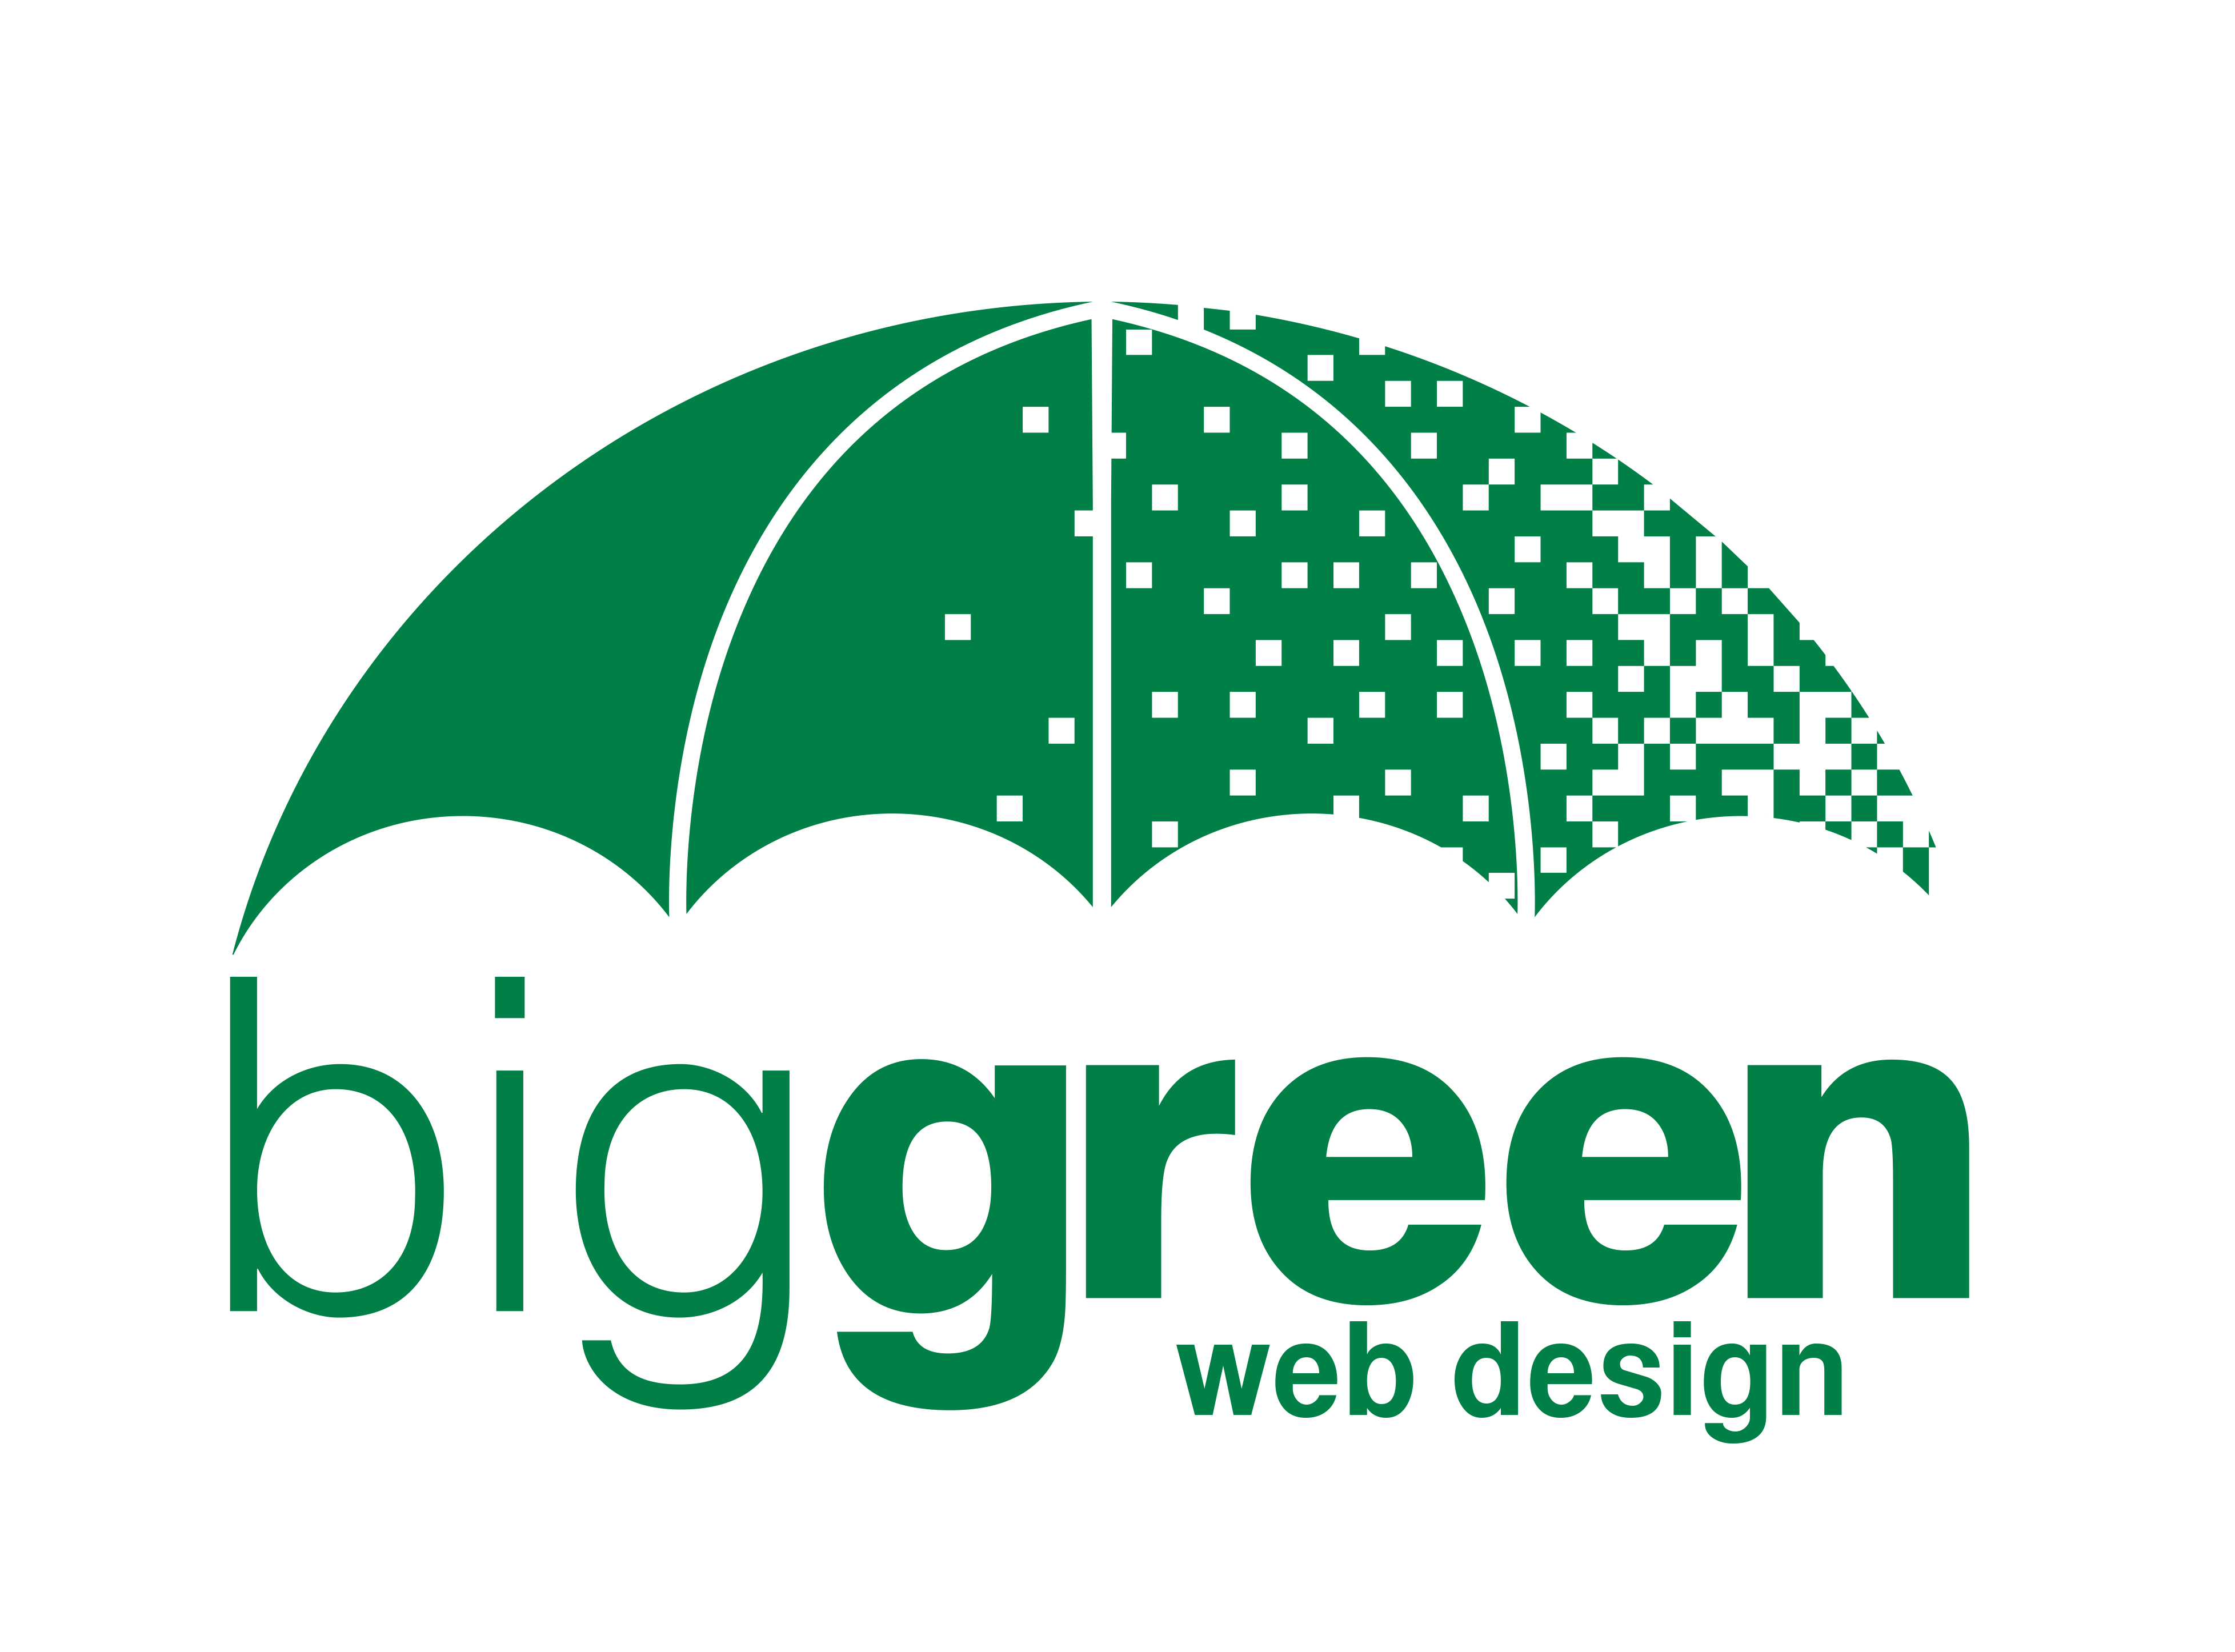 Big Green Web Design